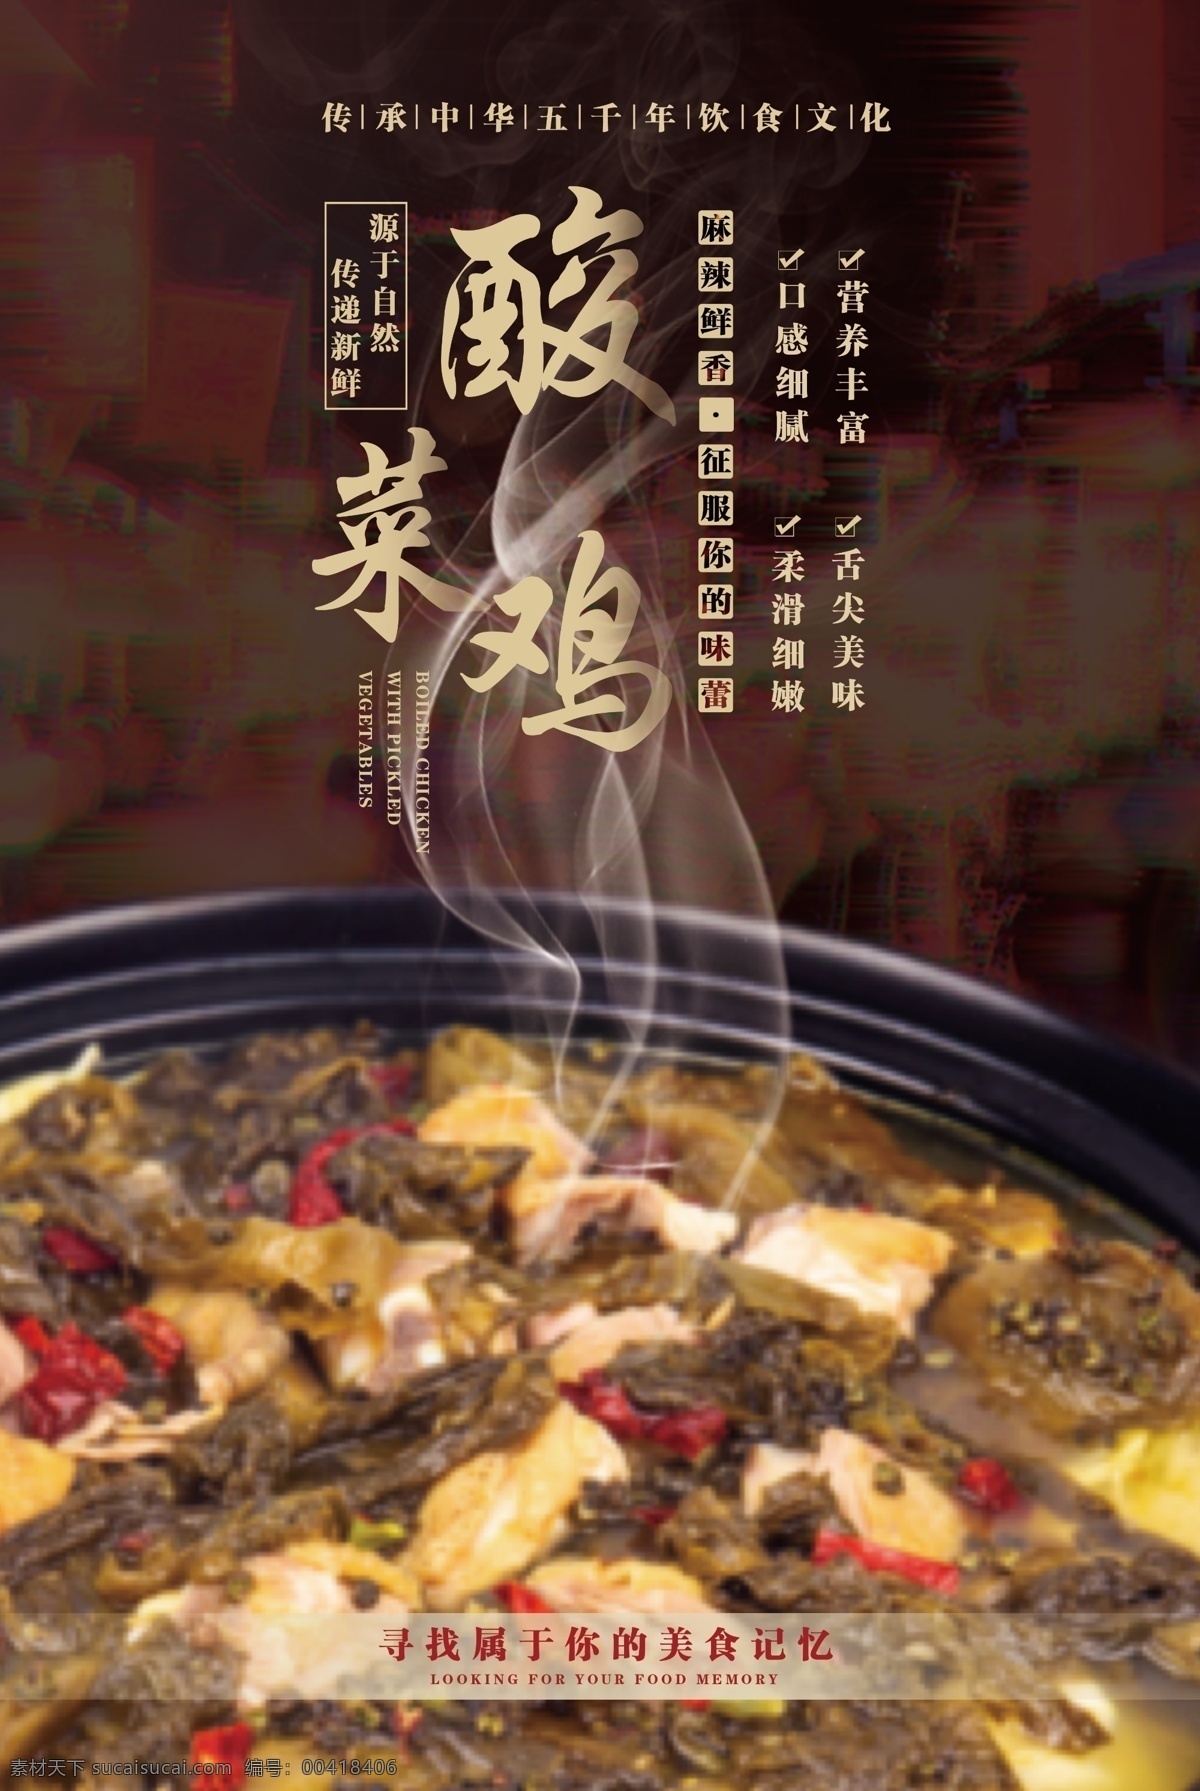 美食 宣传海报 酸菜 鸡 宣传 海报 酸菜鸡 火锅 麻辣 重庆 版式设计 排版 文案 传统